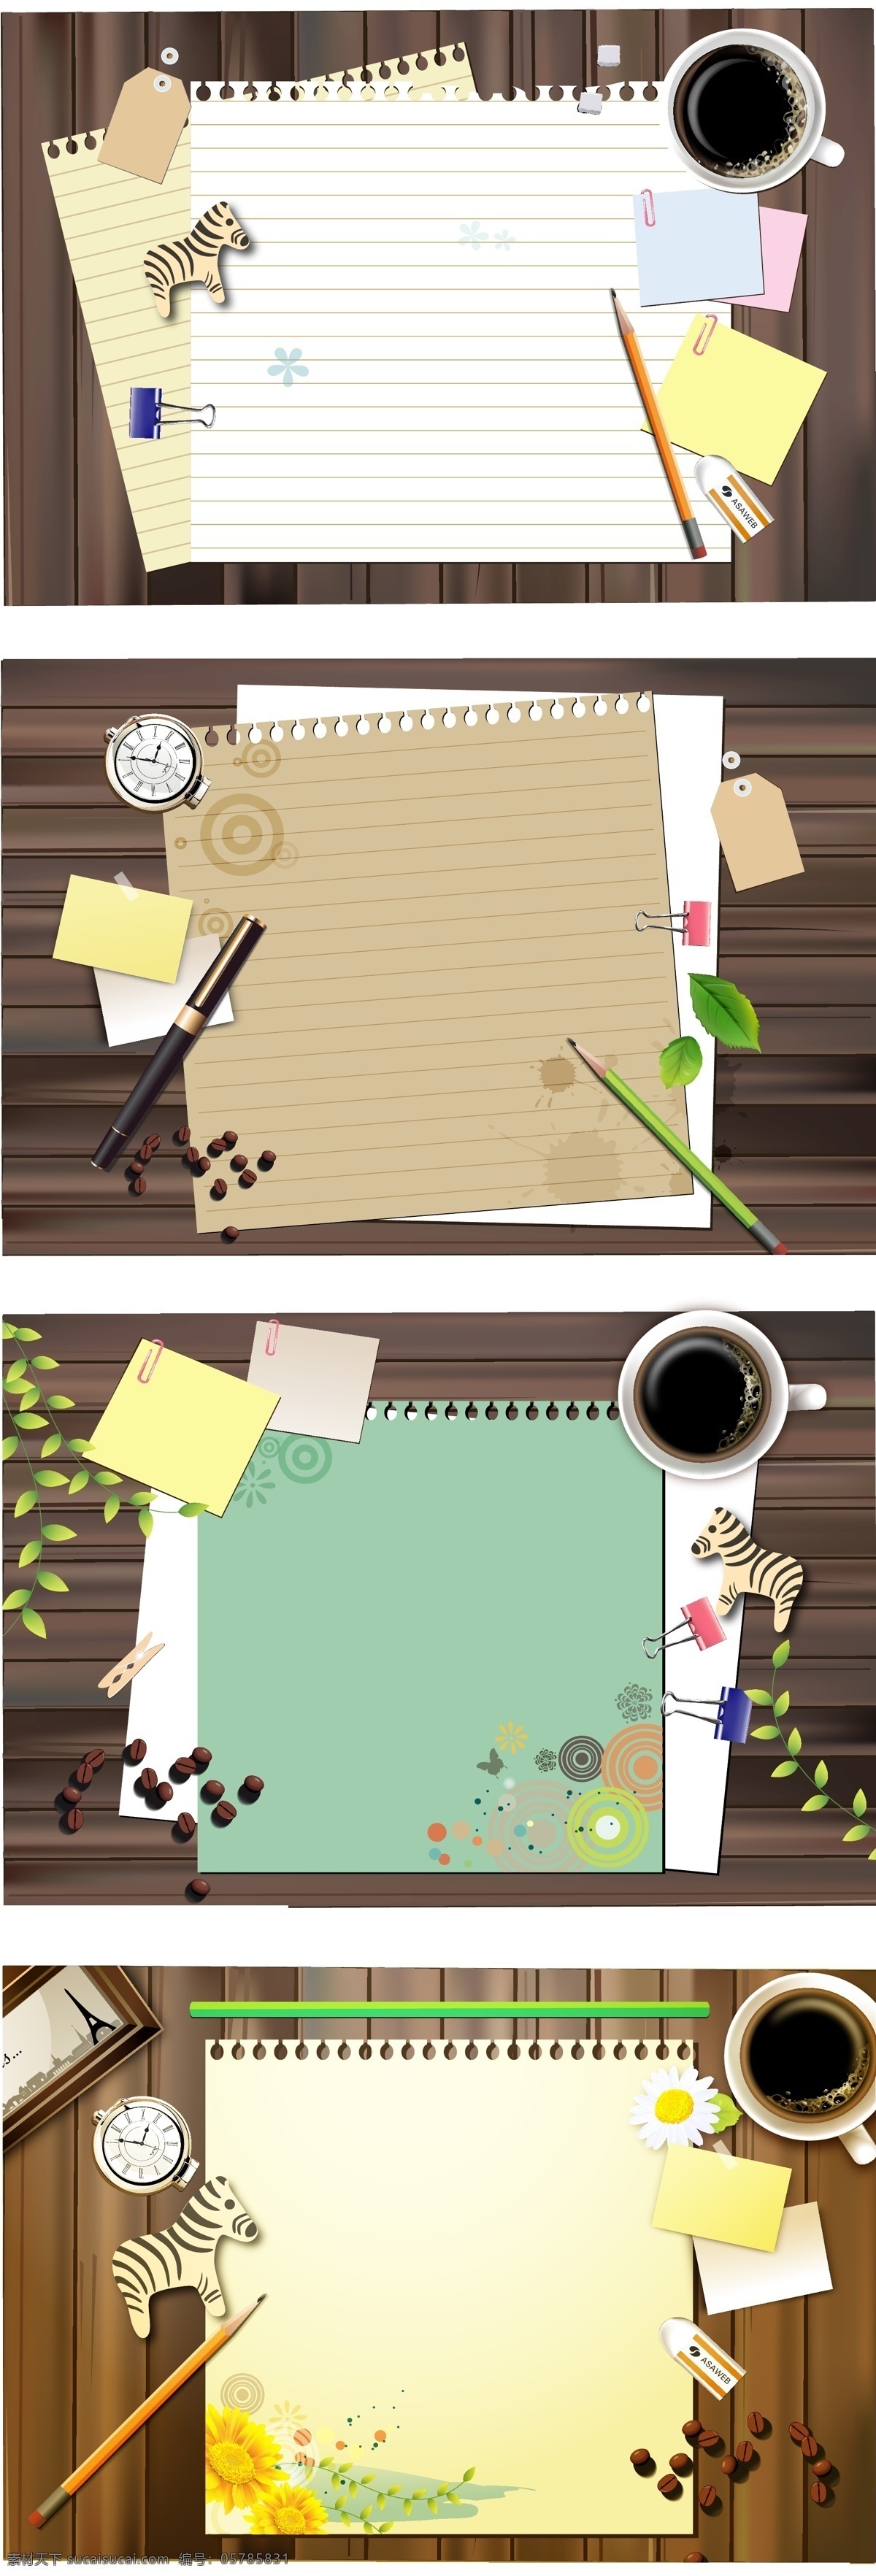 纸张 笔记 矢量 背景 便条 钢笔 画框 架子 咖啡 咖啡豆 木板 铅笔 文件夹 信纸 叶子 斑马书签 钟表 fruitbox 矢量图 其他矢量图